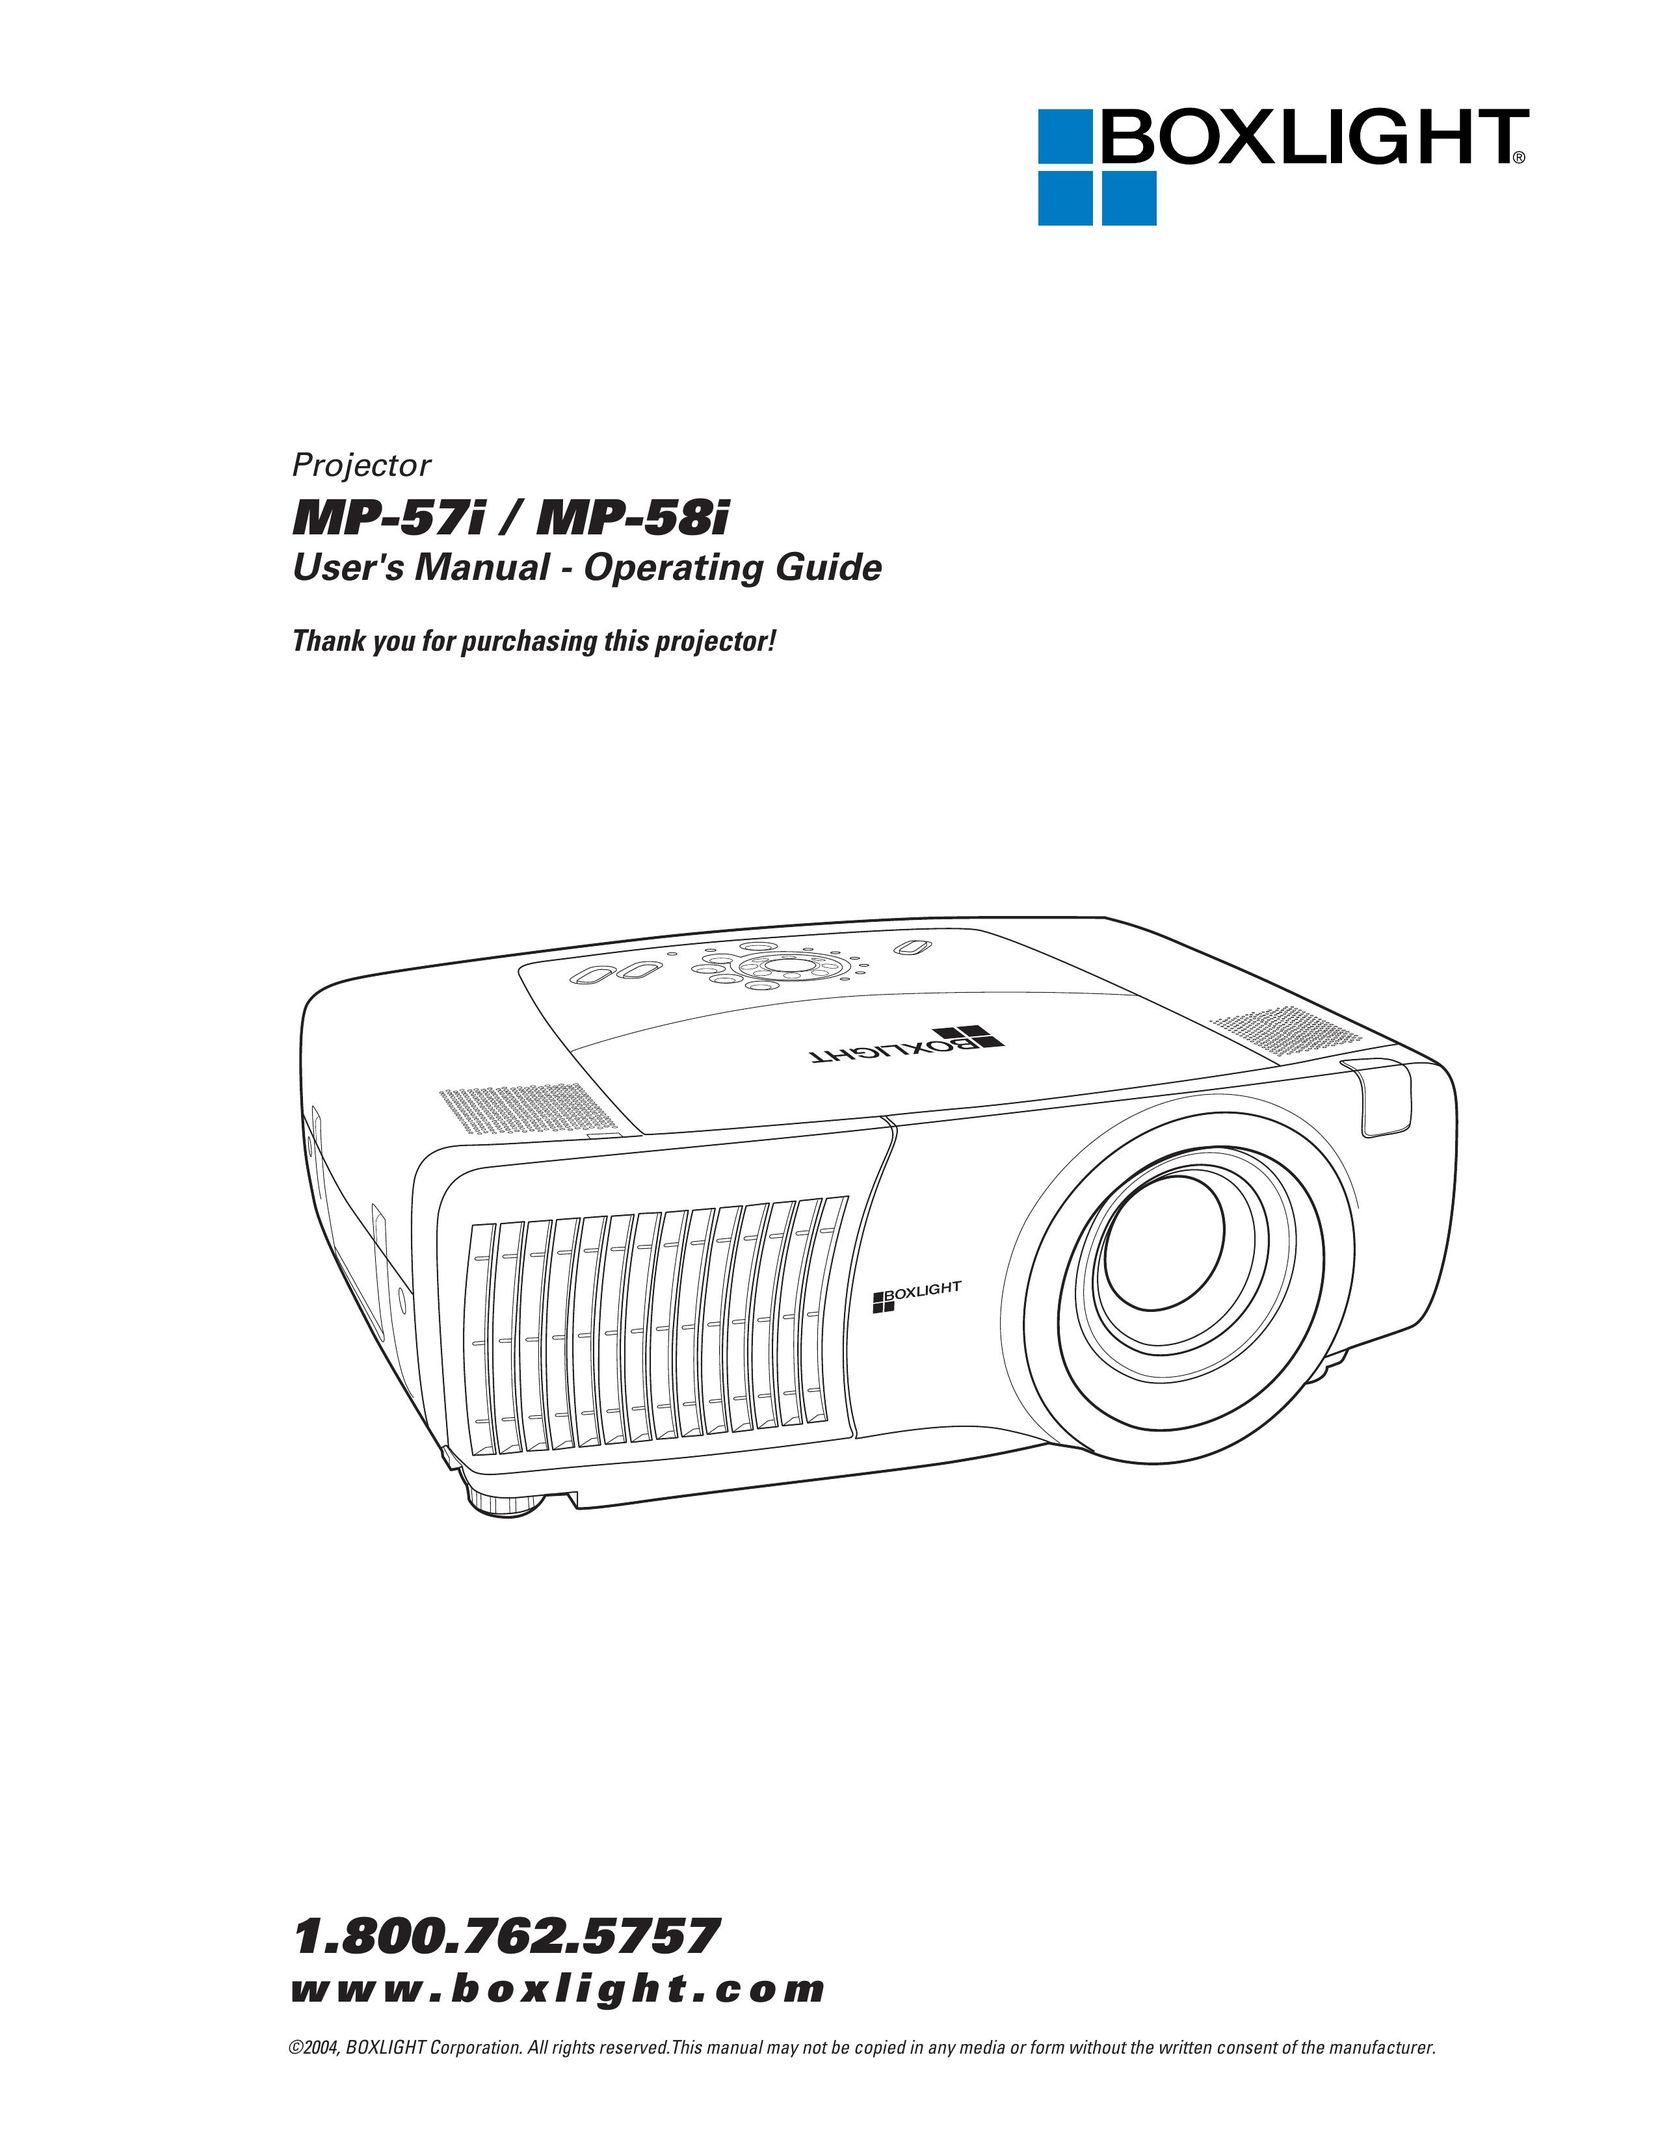 BOXLIGHT MP-58i Projector User Manual